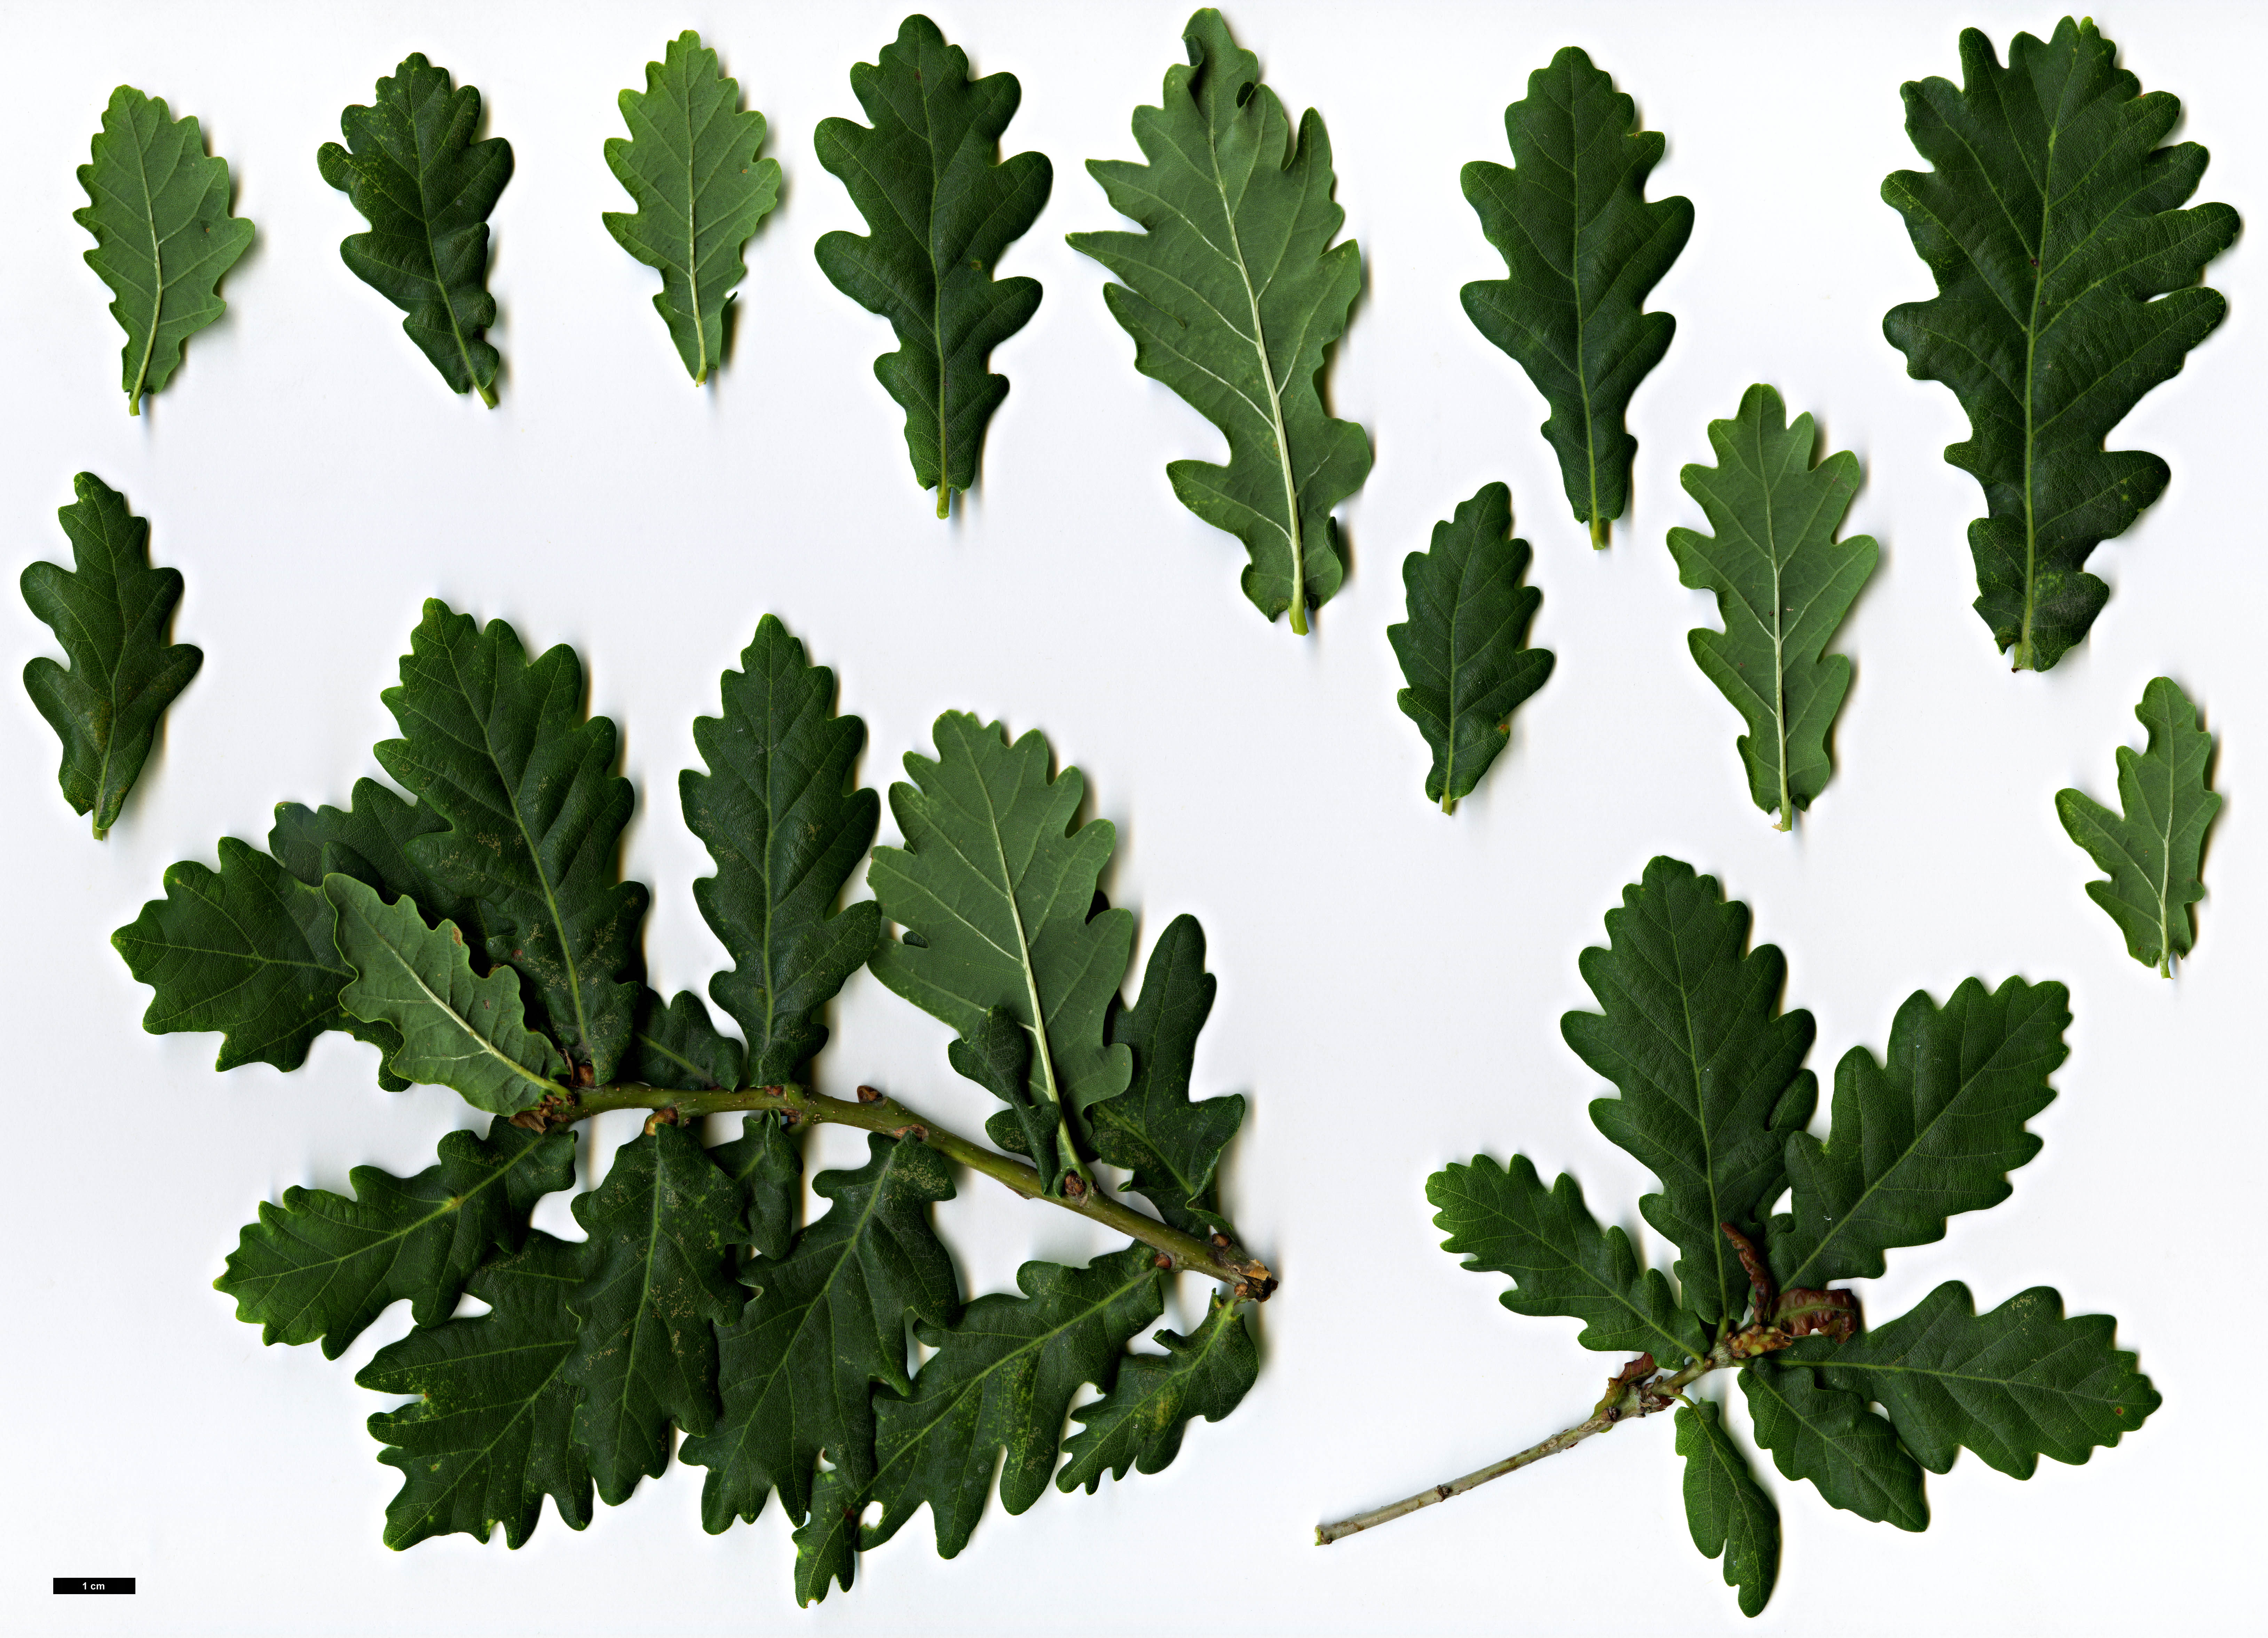 High resolution image: Family: Fagaceae - Genus: Quercus - Taxon: ×coutinhoi (Q.faginea × Q.robur)